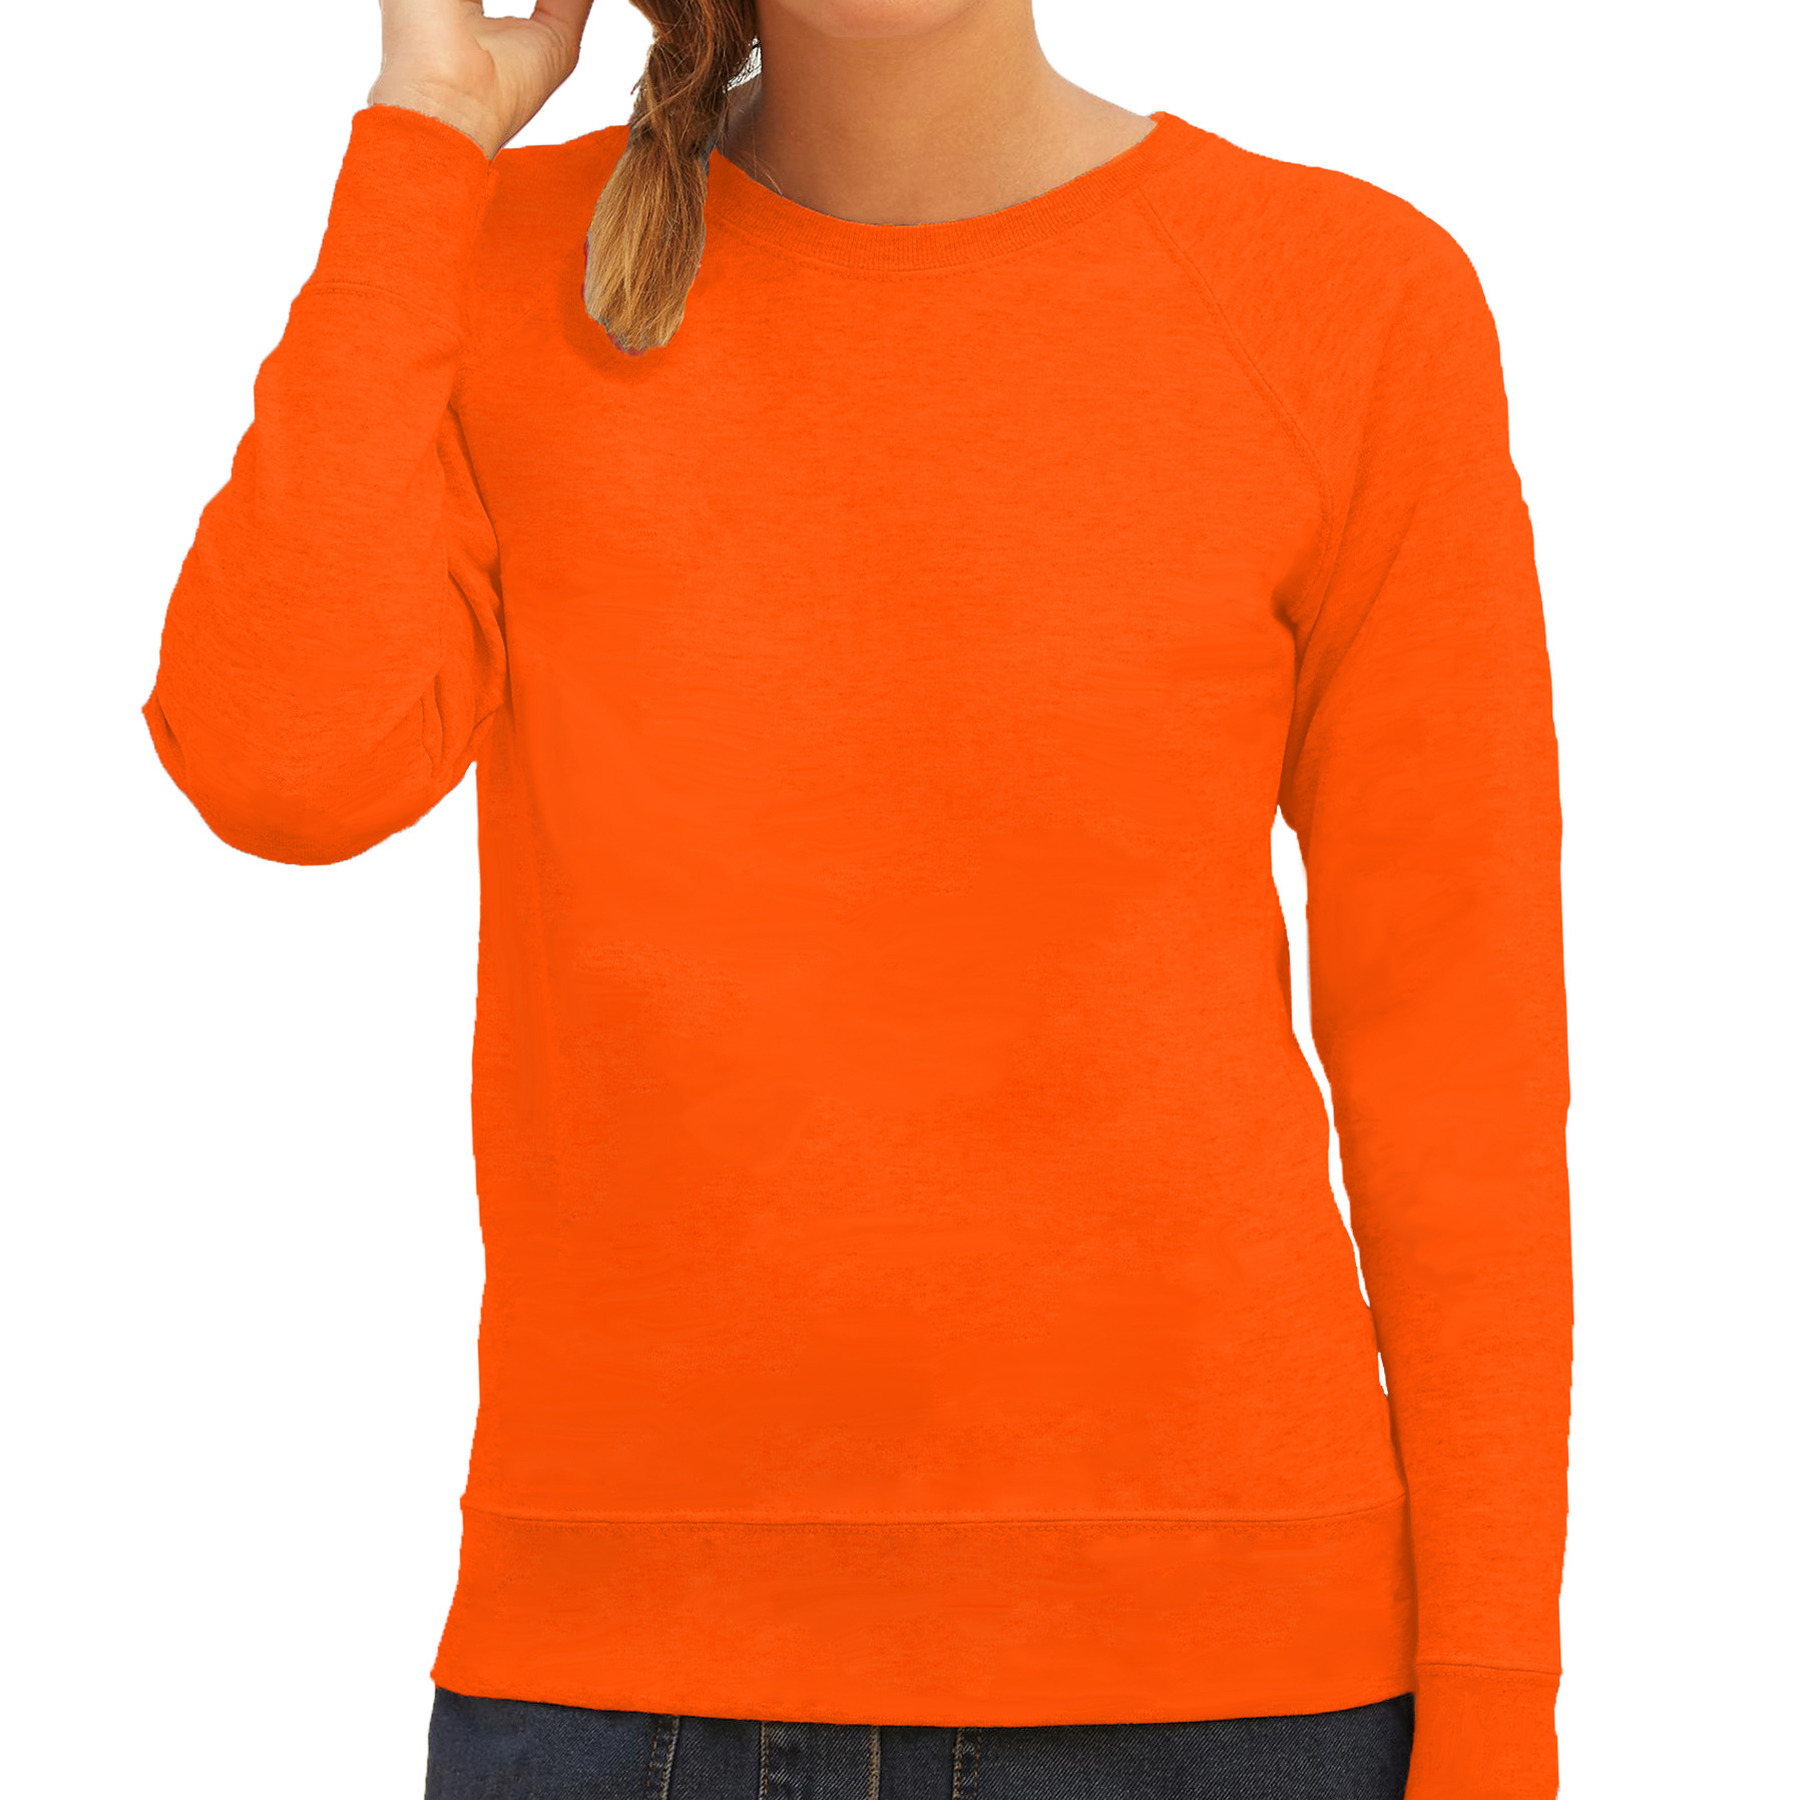 Oranje sweater - sweatshirt trui met raglan mouwen en ronde hals voor dames